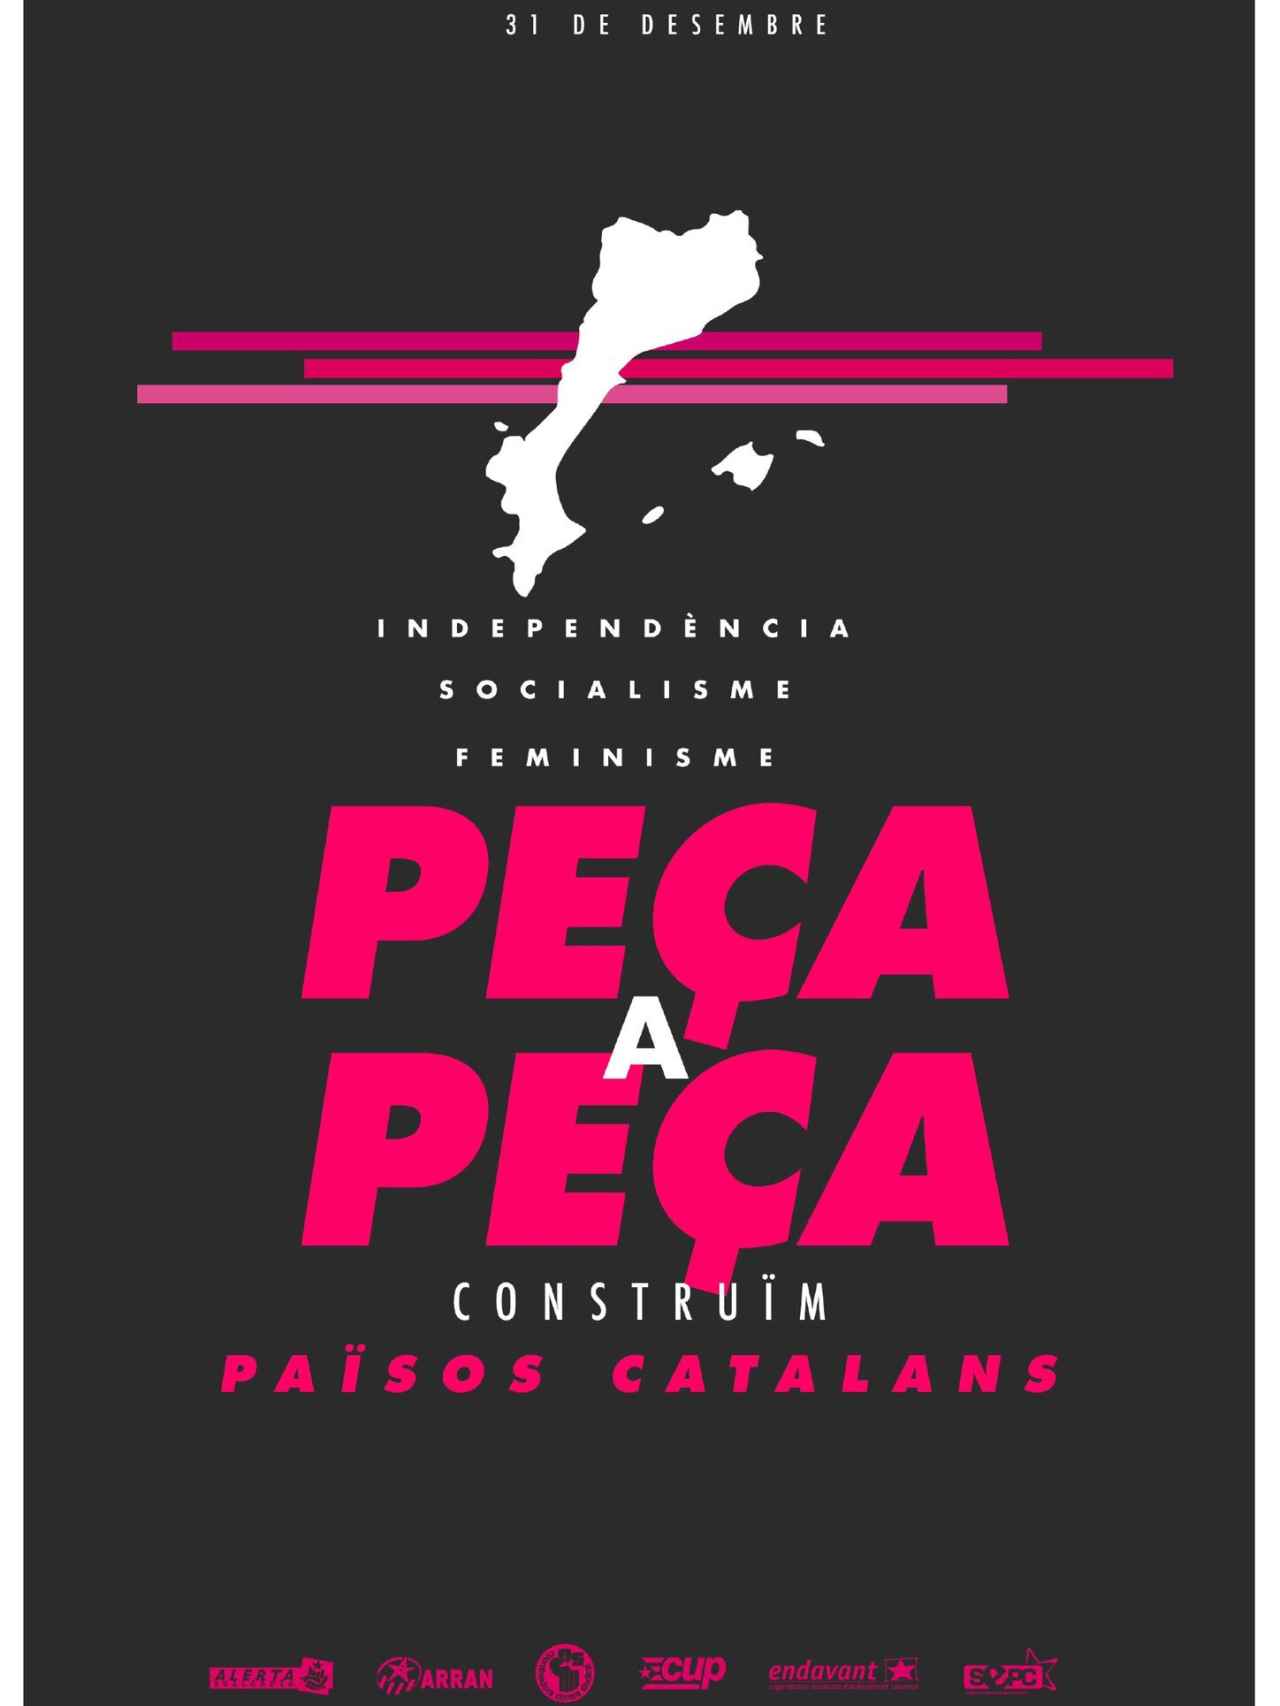 Cartel de la CUP para la manifestación  en Mallorca